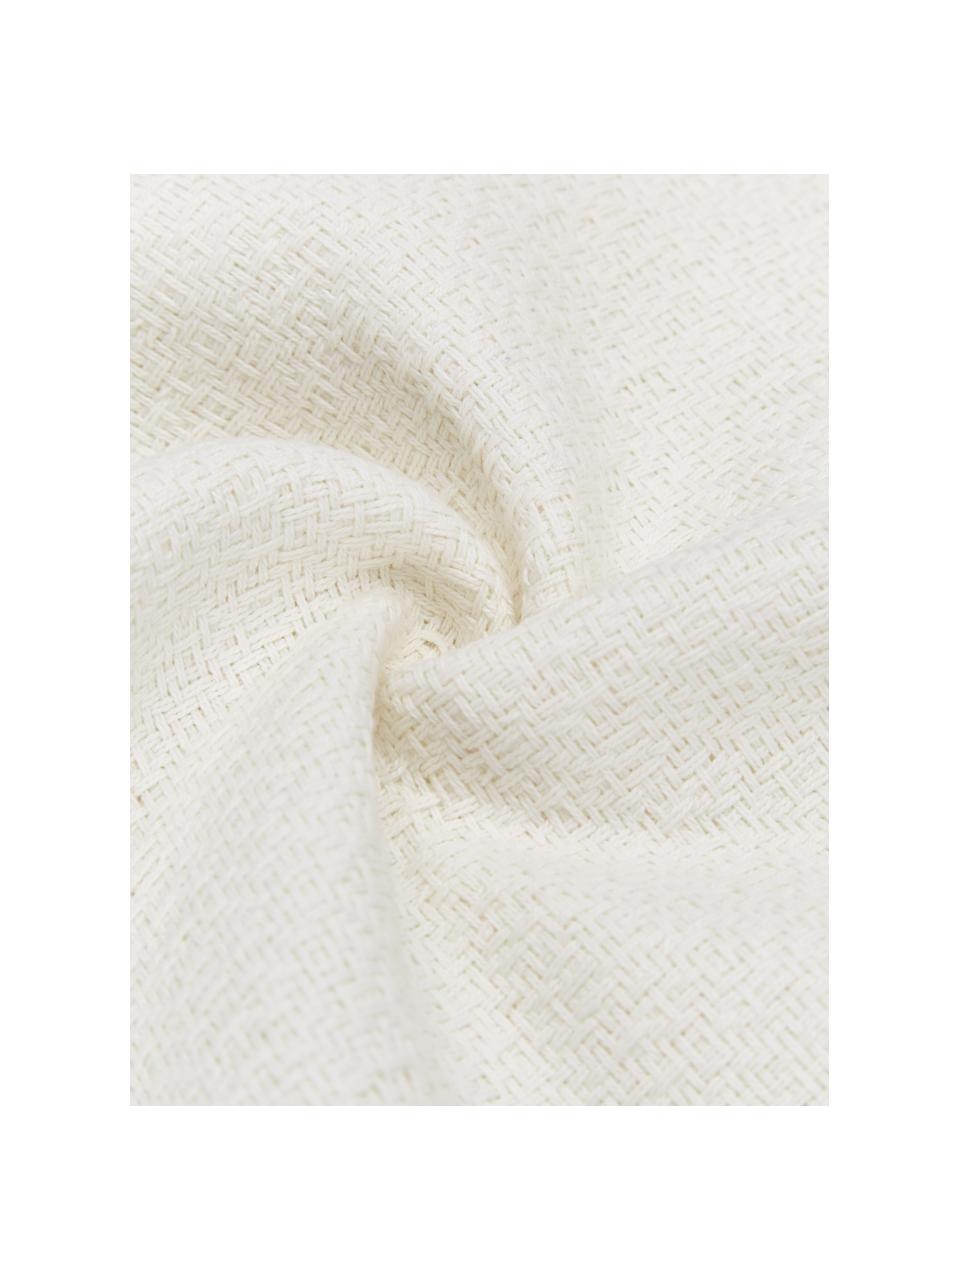 Kissenhülle Lori in Cremeweiß mit dekorativen Quasten, 100% Baumwolle, Weiß, B 30 x L 50 cm